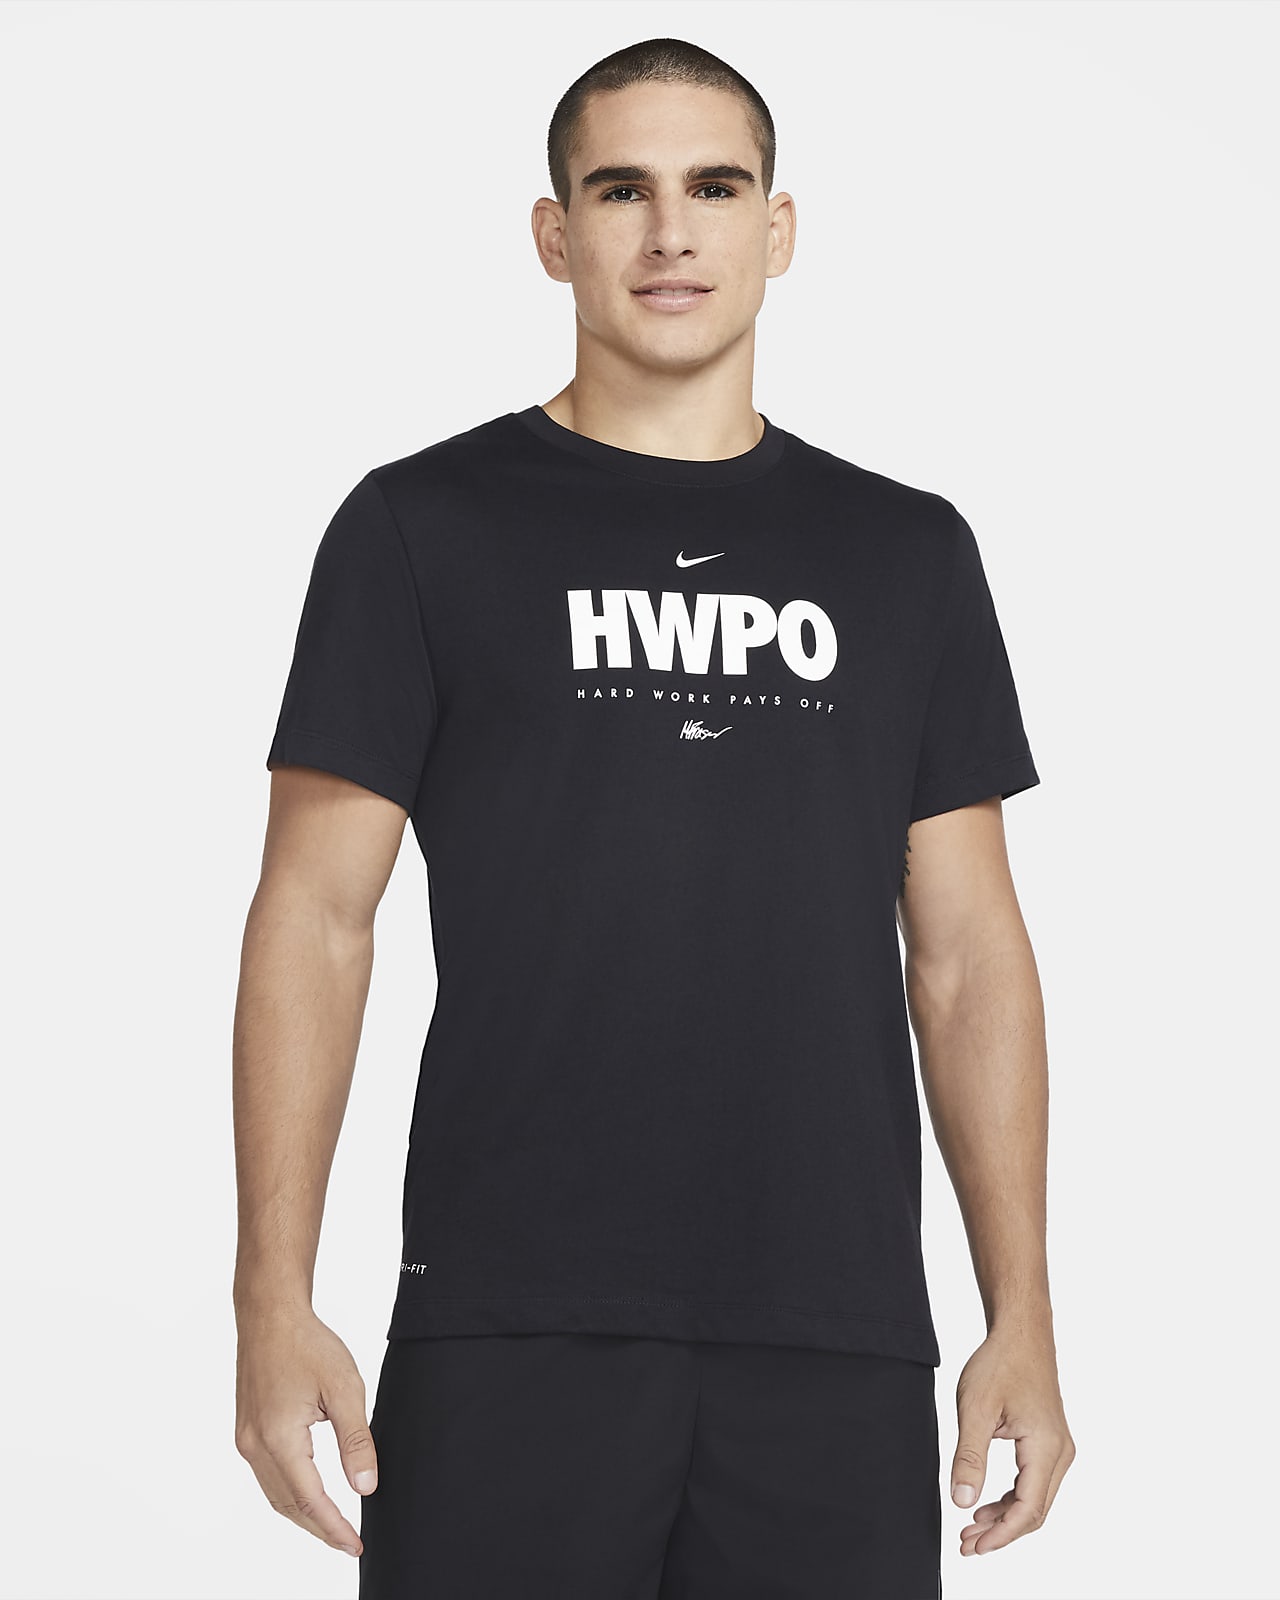 especificar niebla Ponte de pie en su lugar Nike Dri-FIT "HWPO" Camiseta de entrenamiento - Hombre. Nike ES